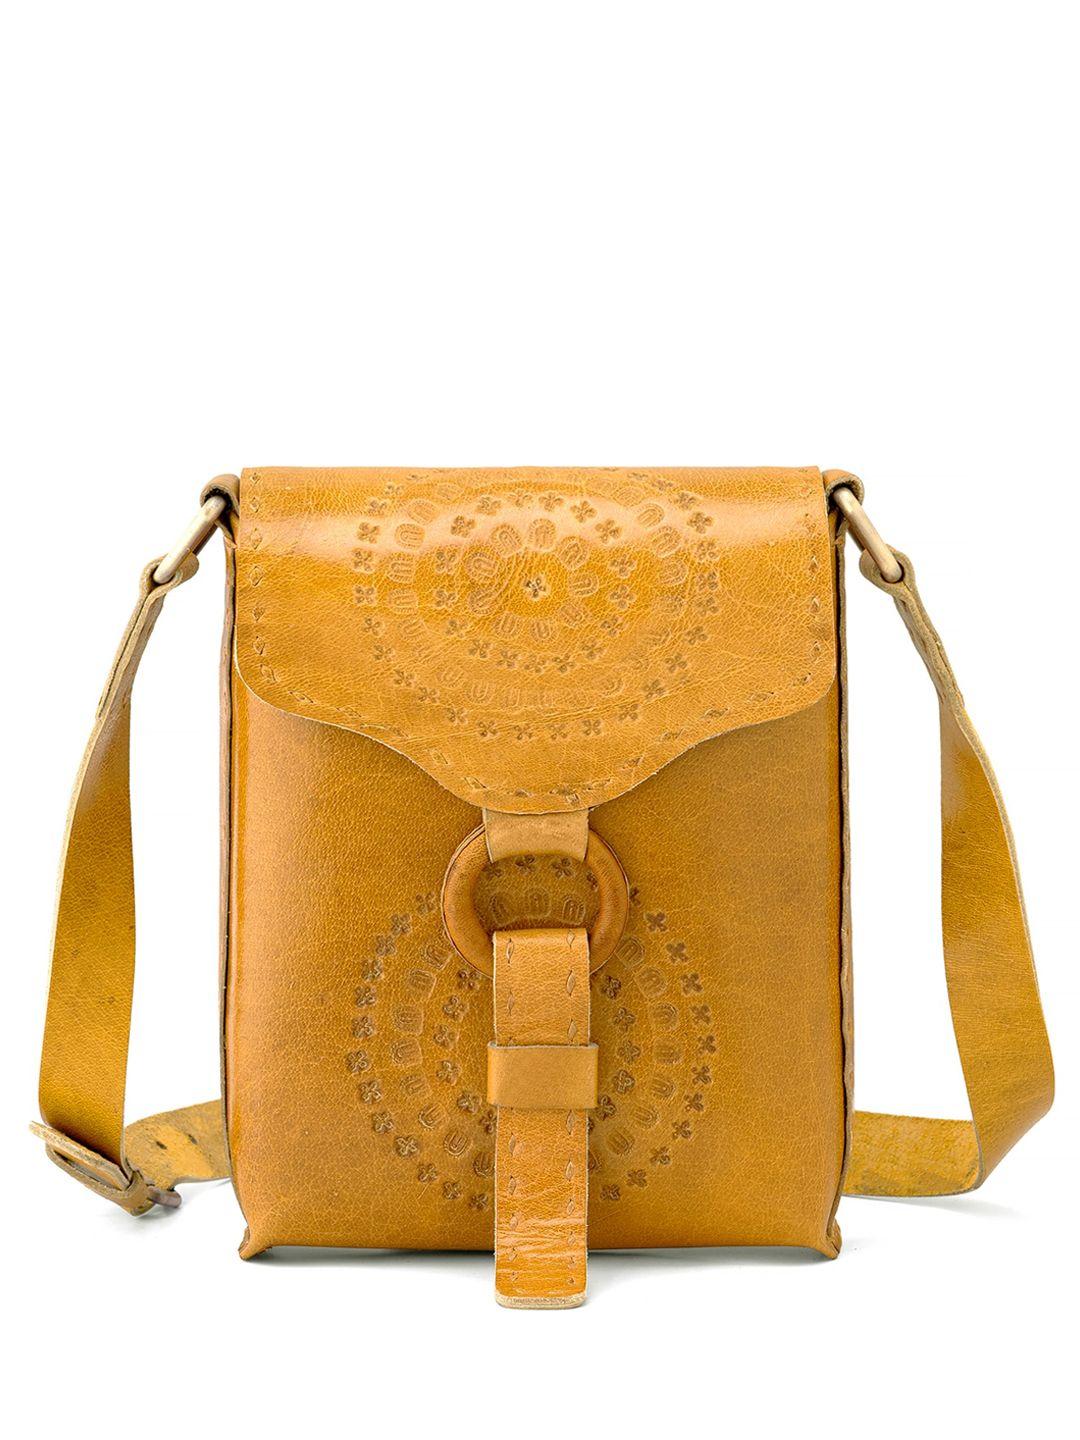 goatter textured structured leather sling bag